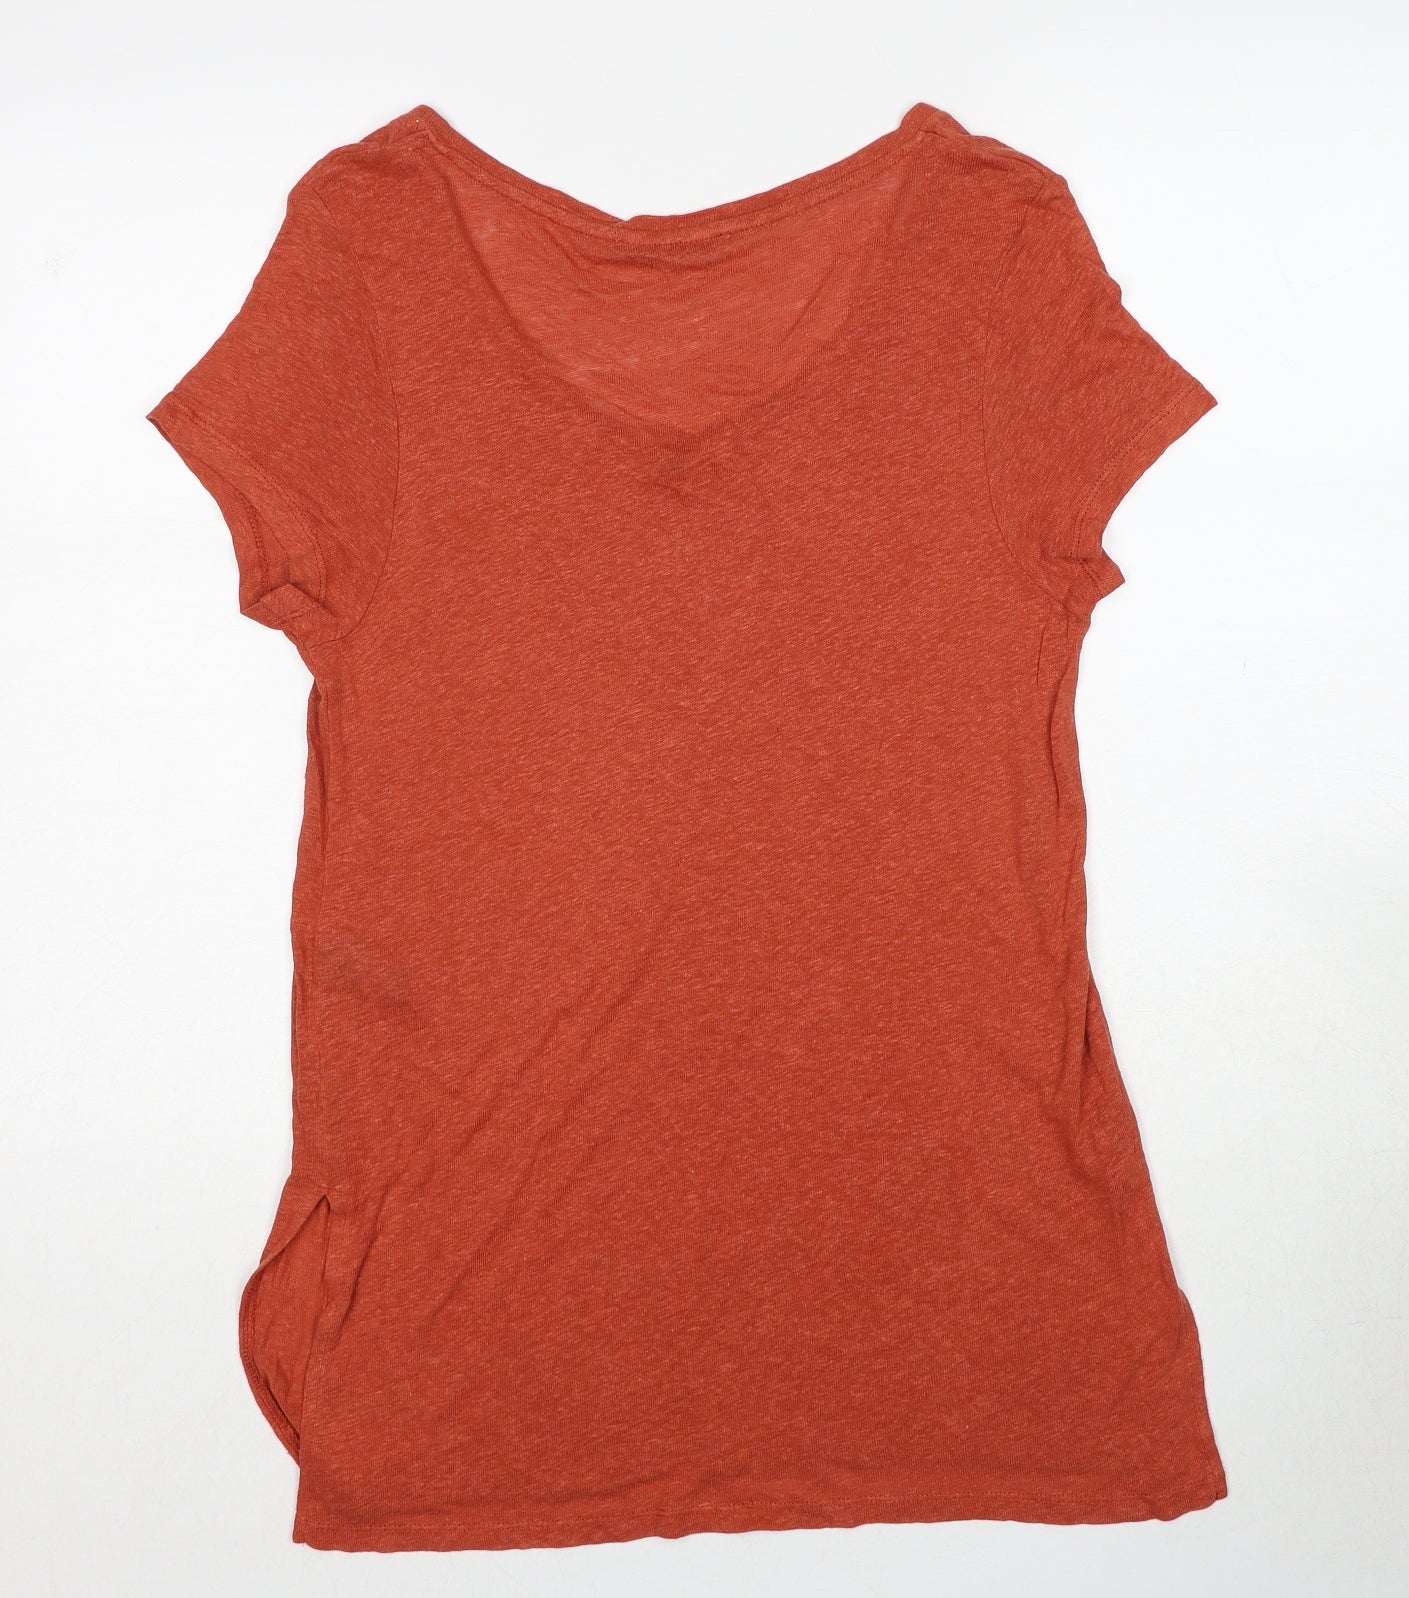 Marks and Spencer Womens Orange Viscose Basic T-Shirt Size 14 Round Neck